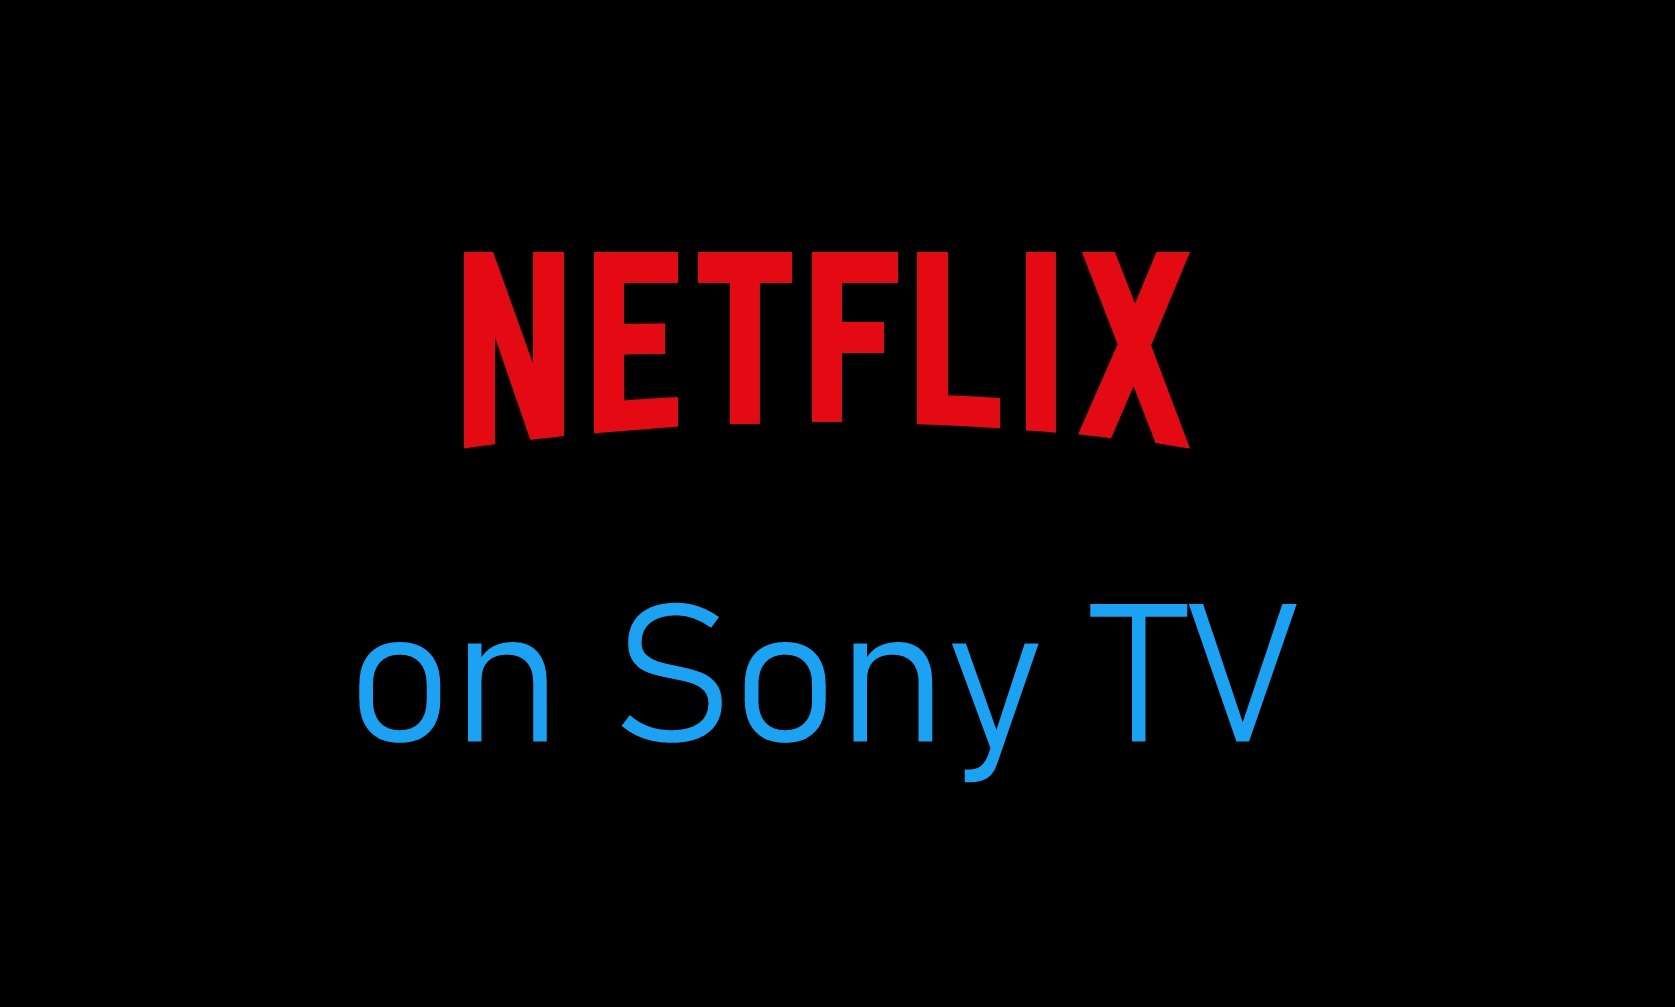 H Sony υπέγραψε πενταετή συμφωνία με το Netflix